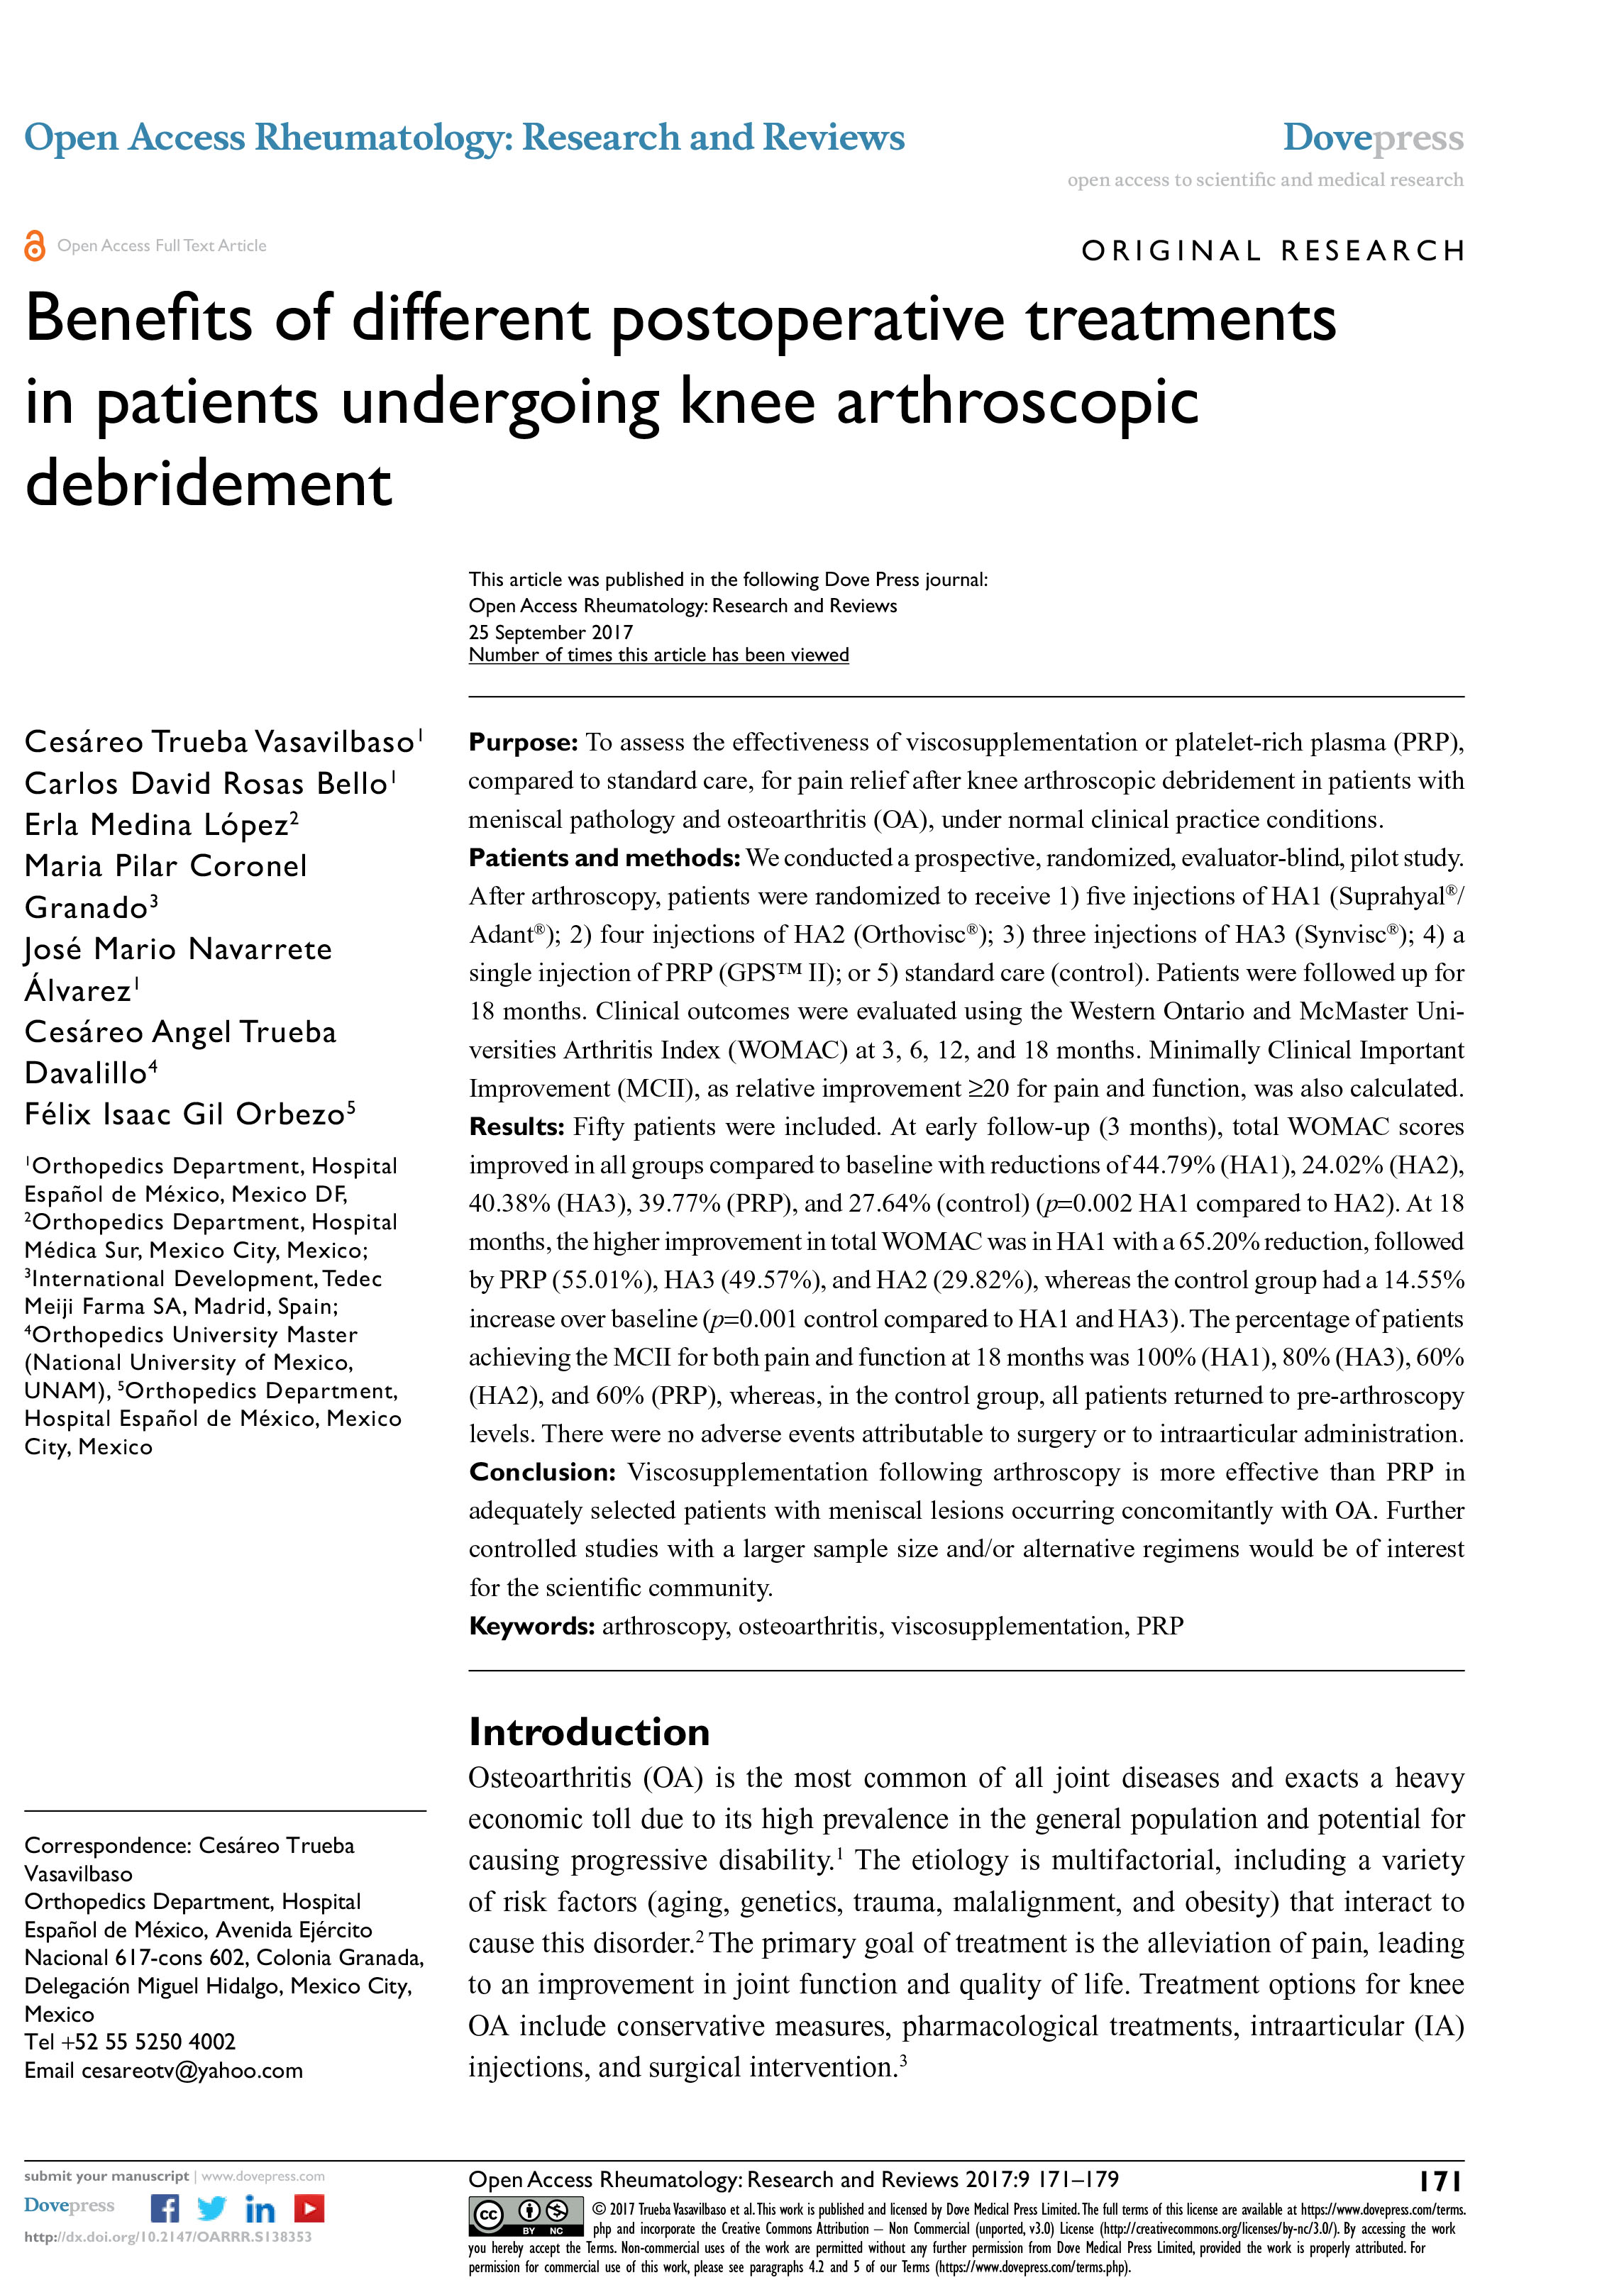 Benefits_of_different_postoperative_treatments_in_patients_undergoing_knee_arthroscopic_debridement-1.jpg